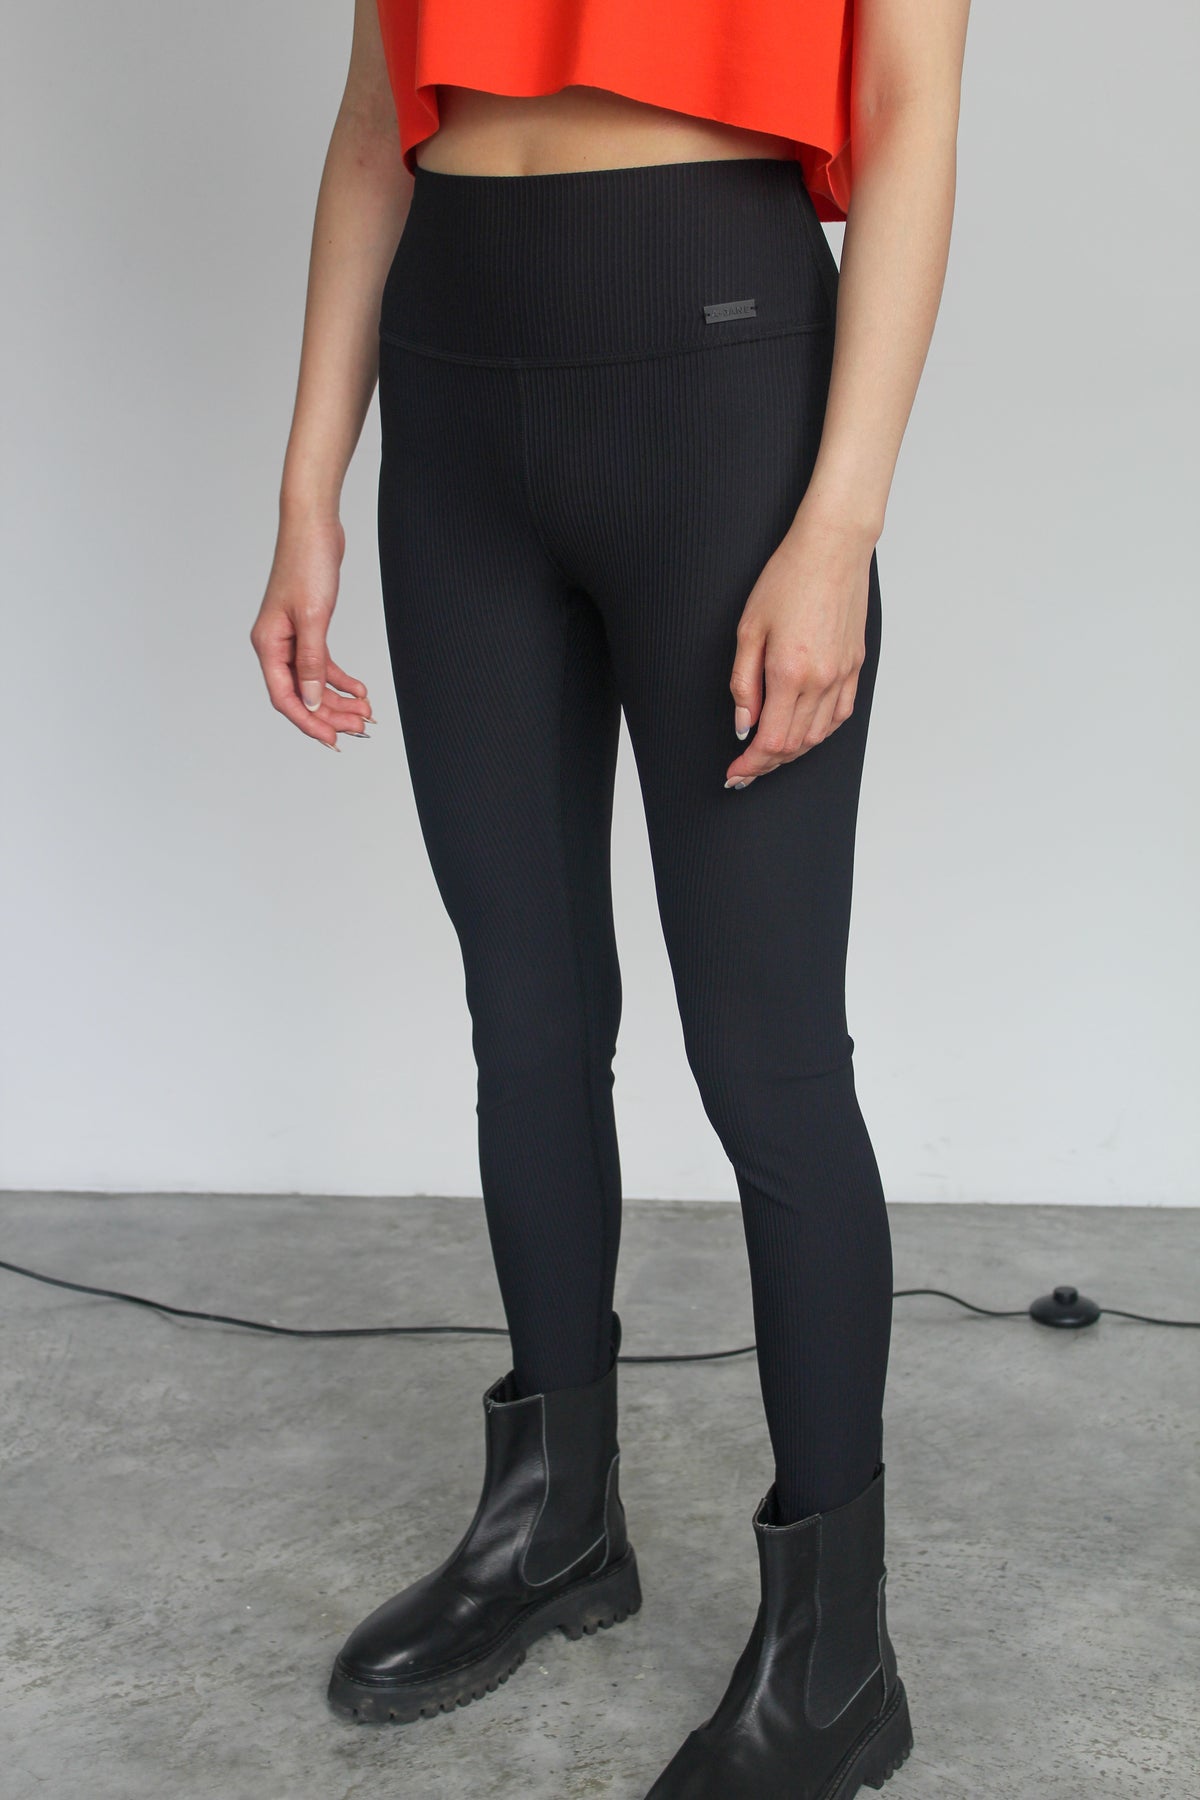 A-JANE Zenth High-Waisted Monochrome Yoga Pants